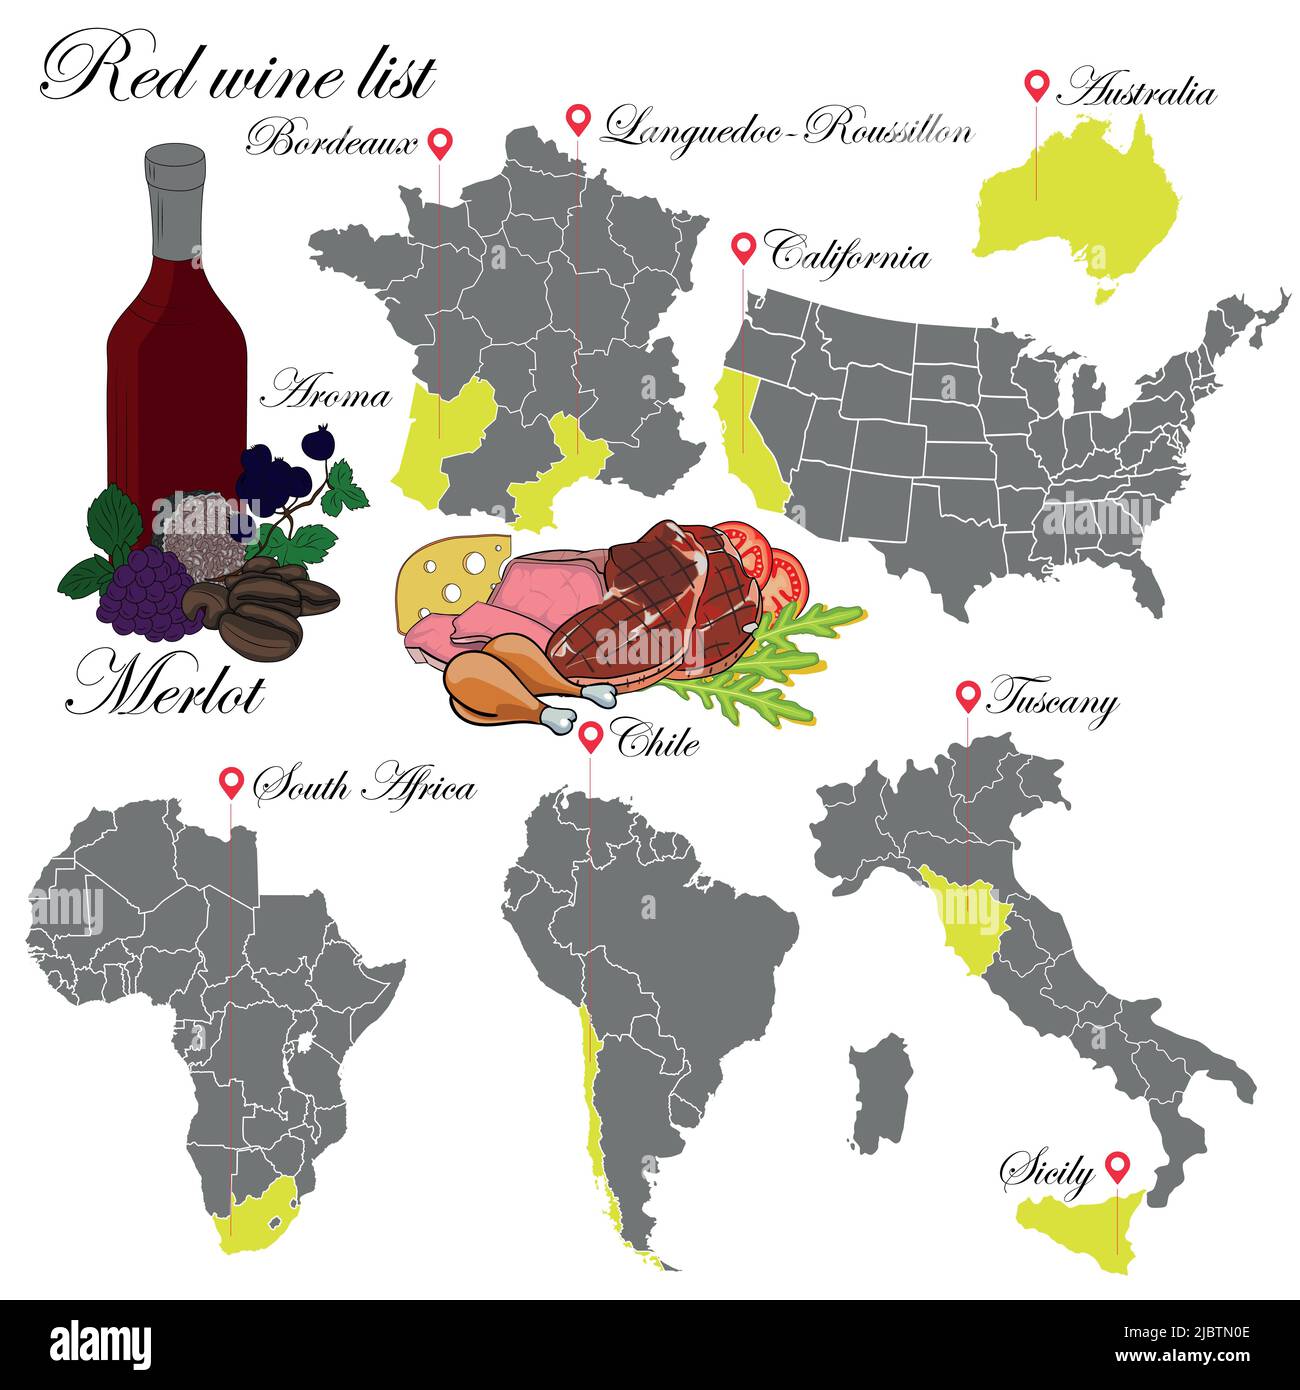 Merlot. La carta dei vini. Un'illustrazione di un vino rosso con un esempio di aromi, una mappa dei vigneti e cibo che si abbina al vino. Illustrazione Vettoriale